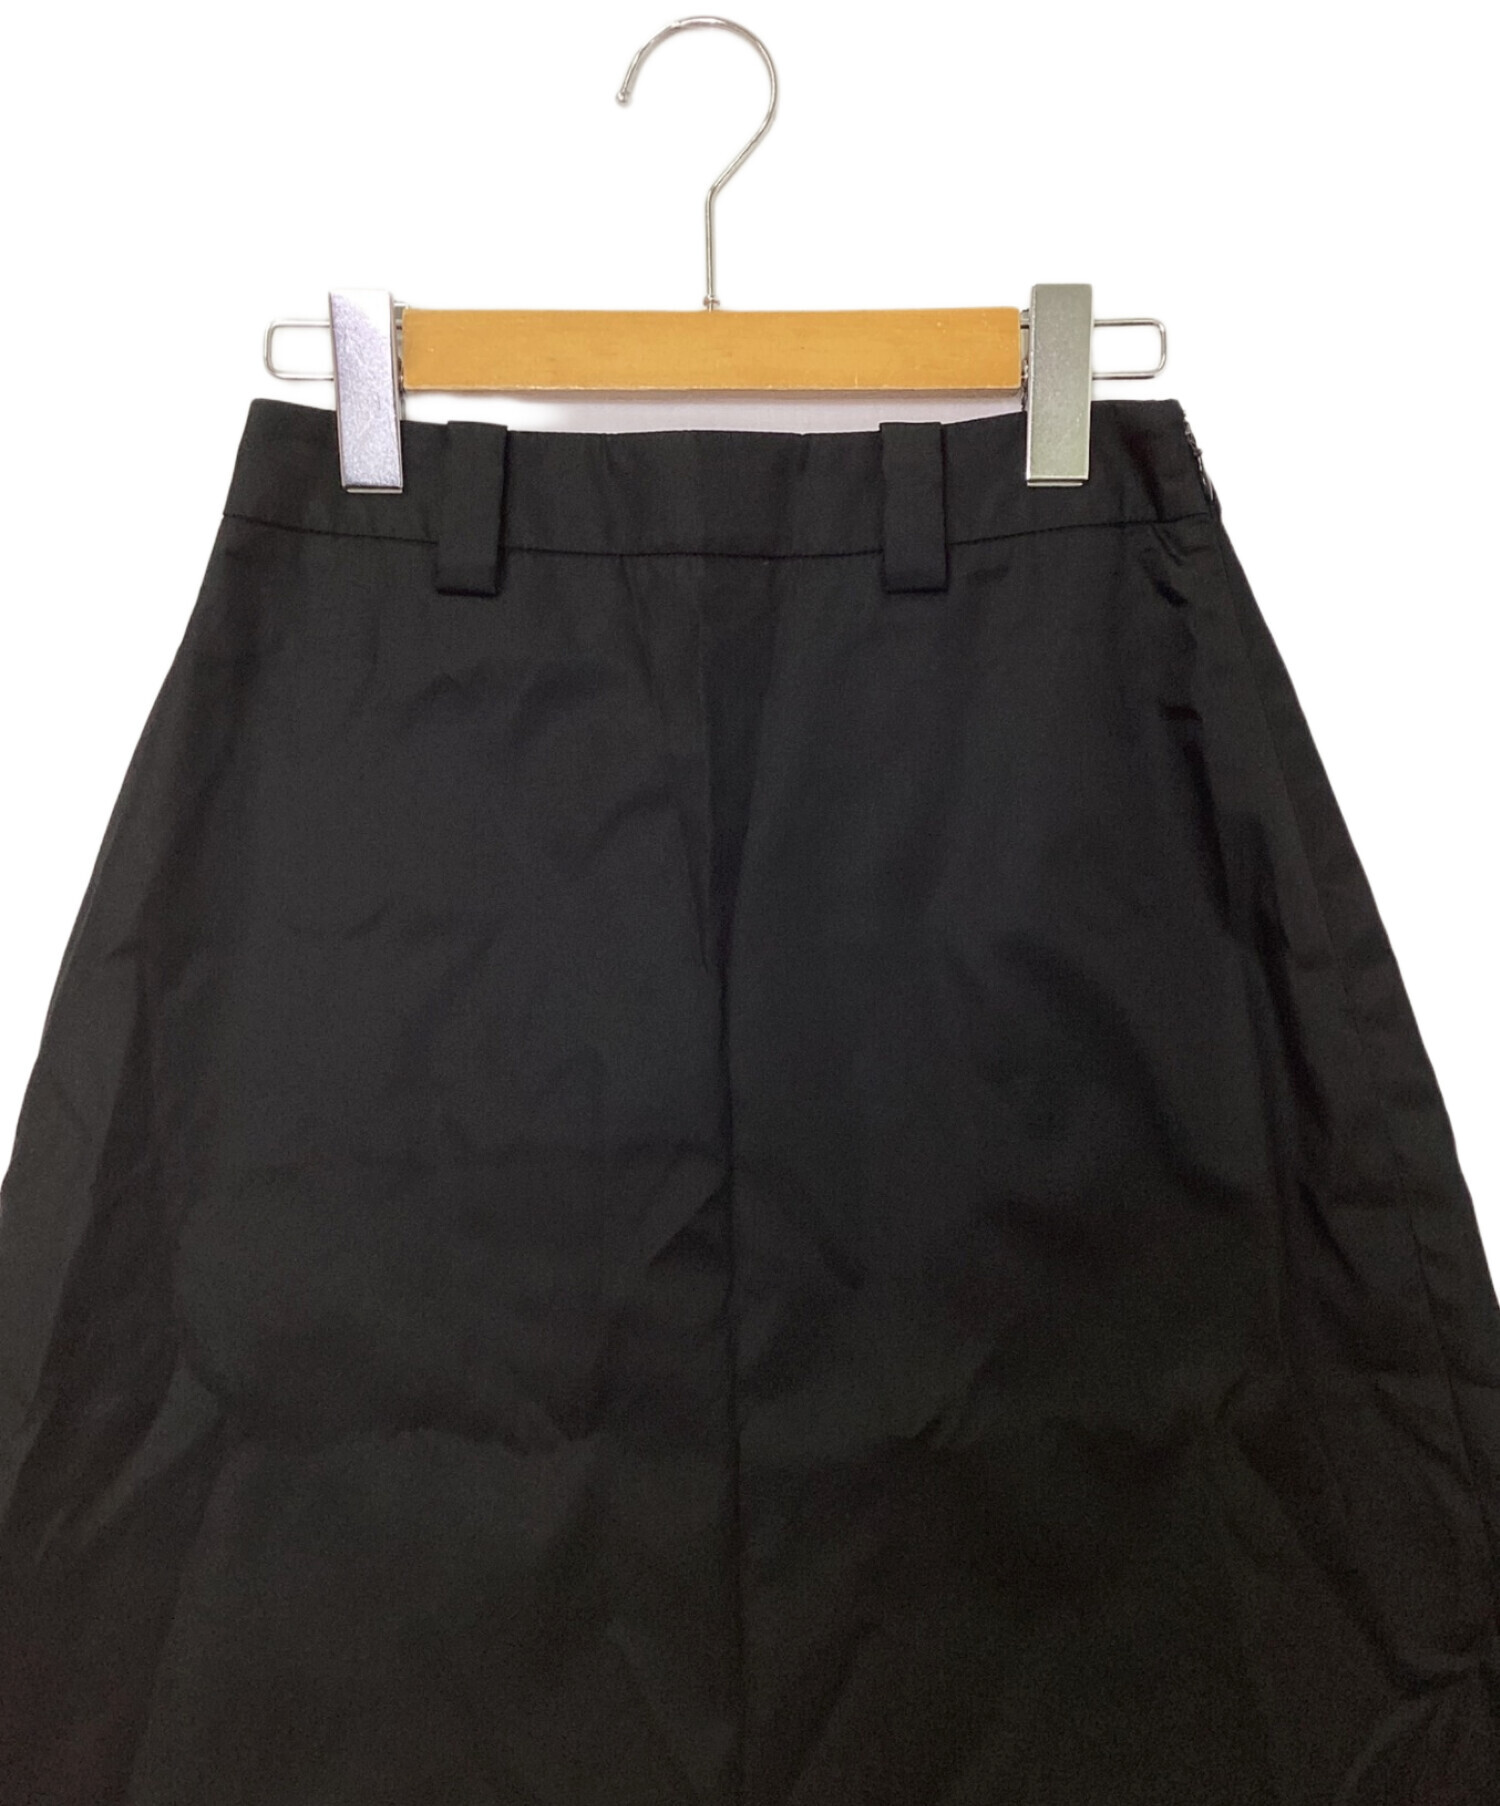 PRADA (プラダ) リナイロンスカート ブラック サイズ:36